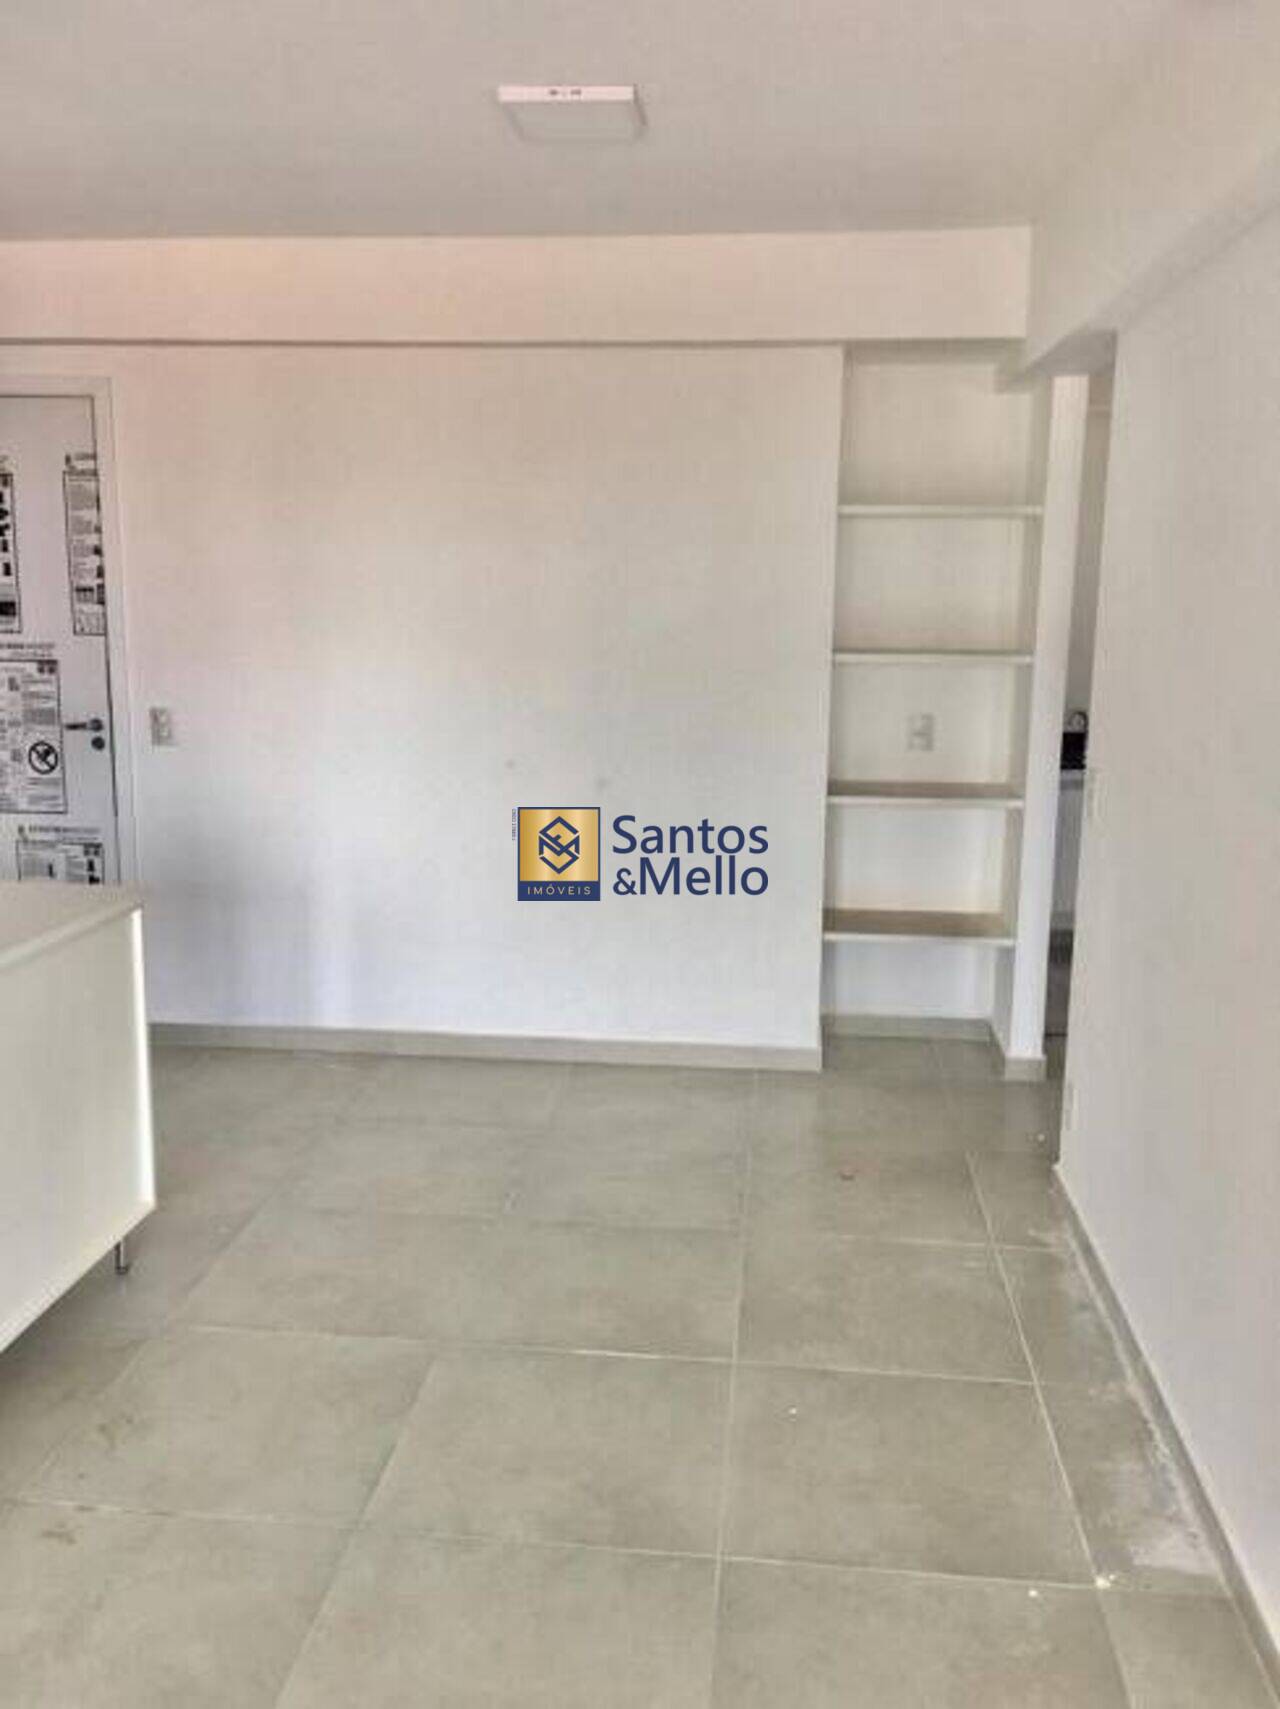 Apartamento Vila São Pedro, Santo André - SP